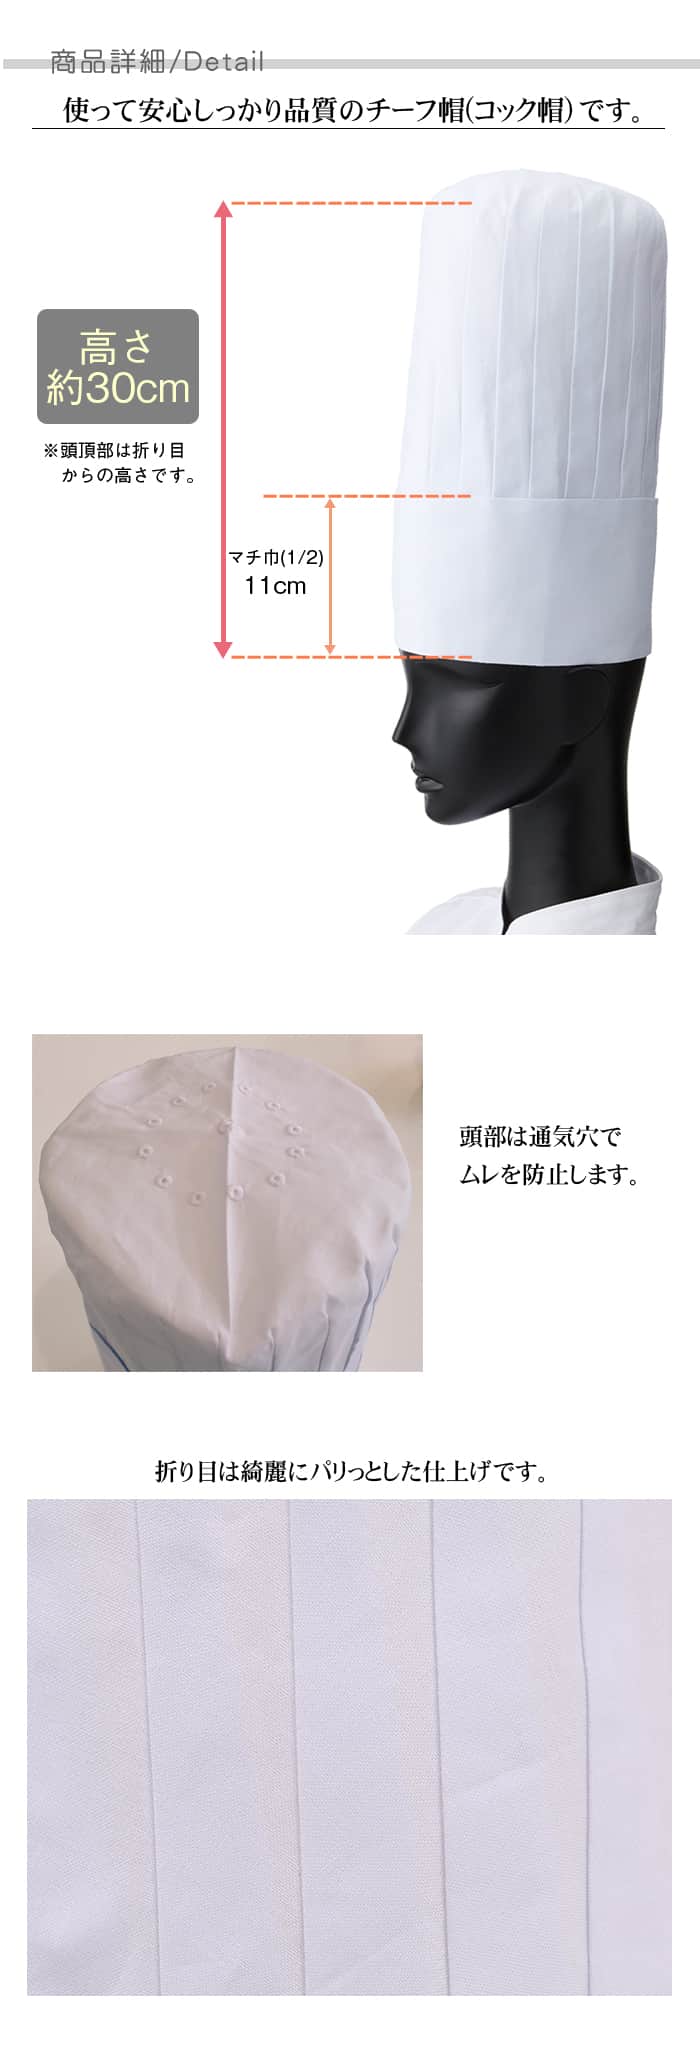 高品質の綿100%素材と品格のチーフ帽(コック帽) レストラン飲食店制服[男女兼用]  詳細仕様説明